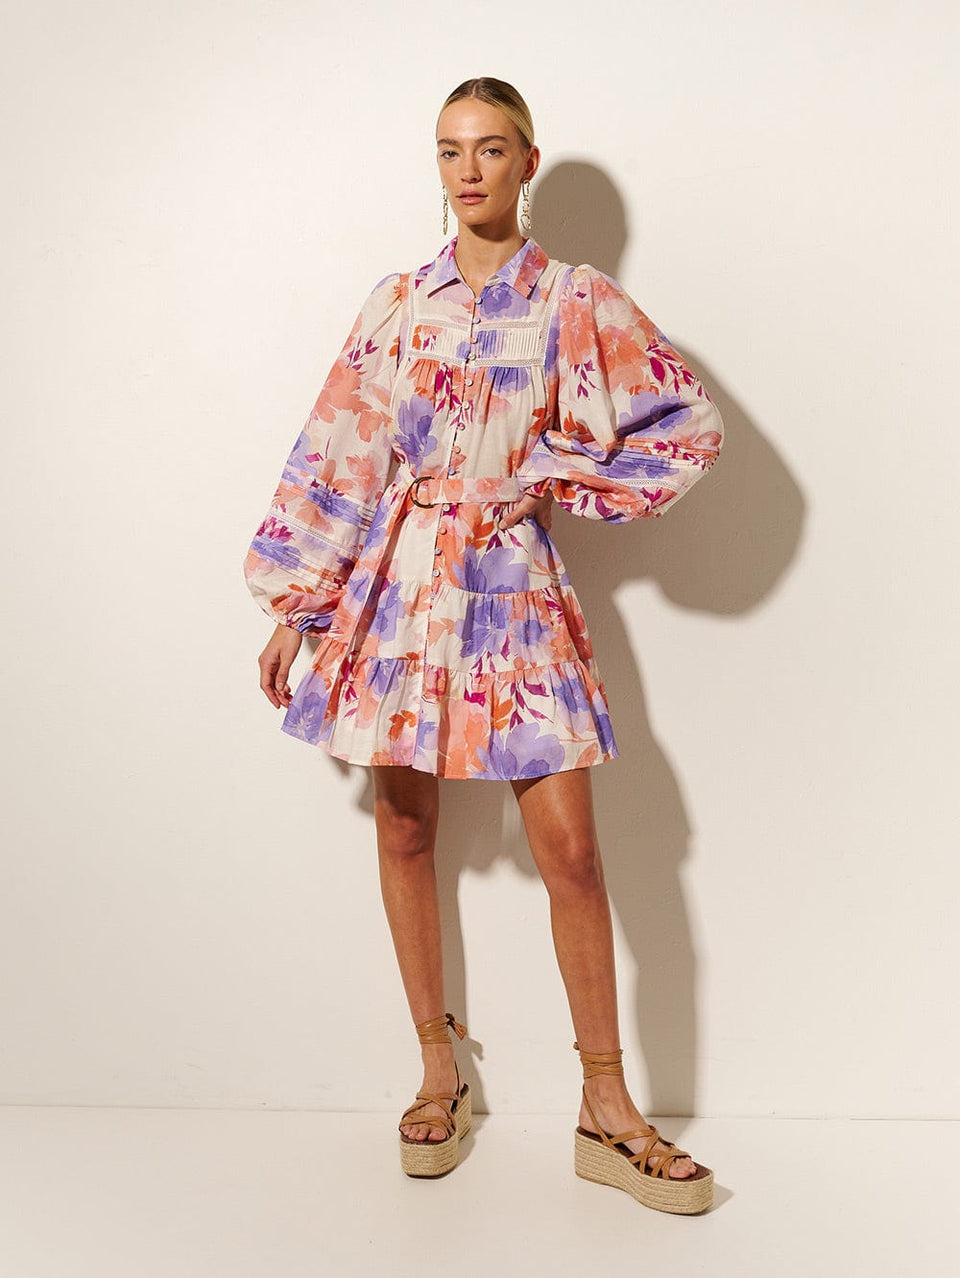 Johannes Mini Dress KIVARI | Model wears floral mini dress